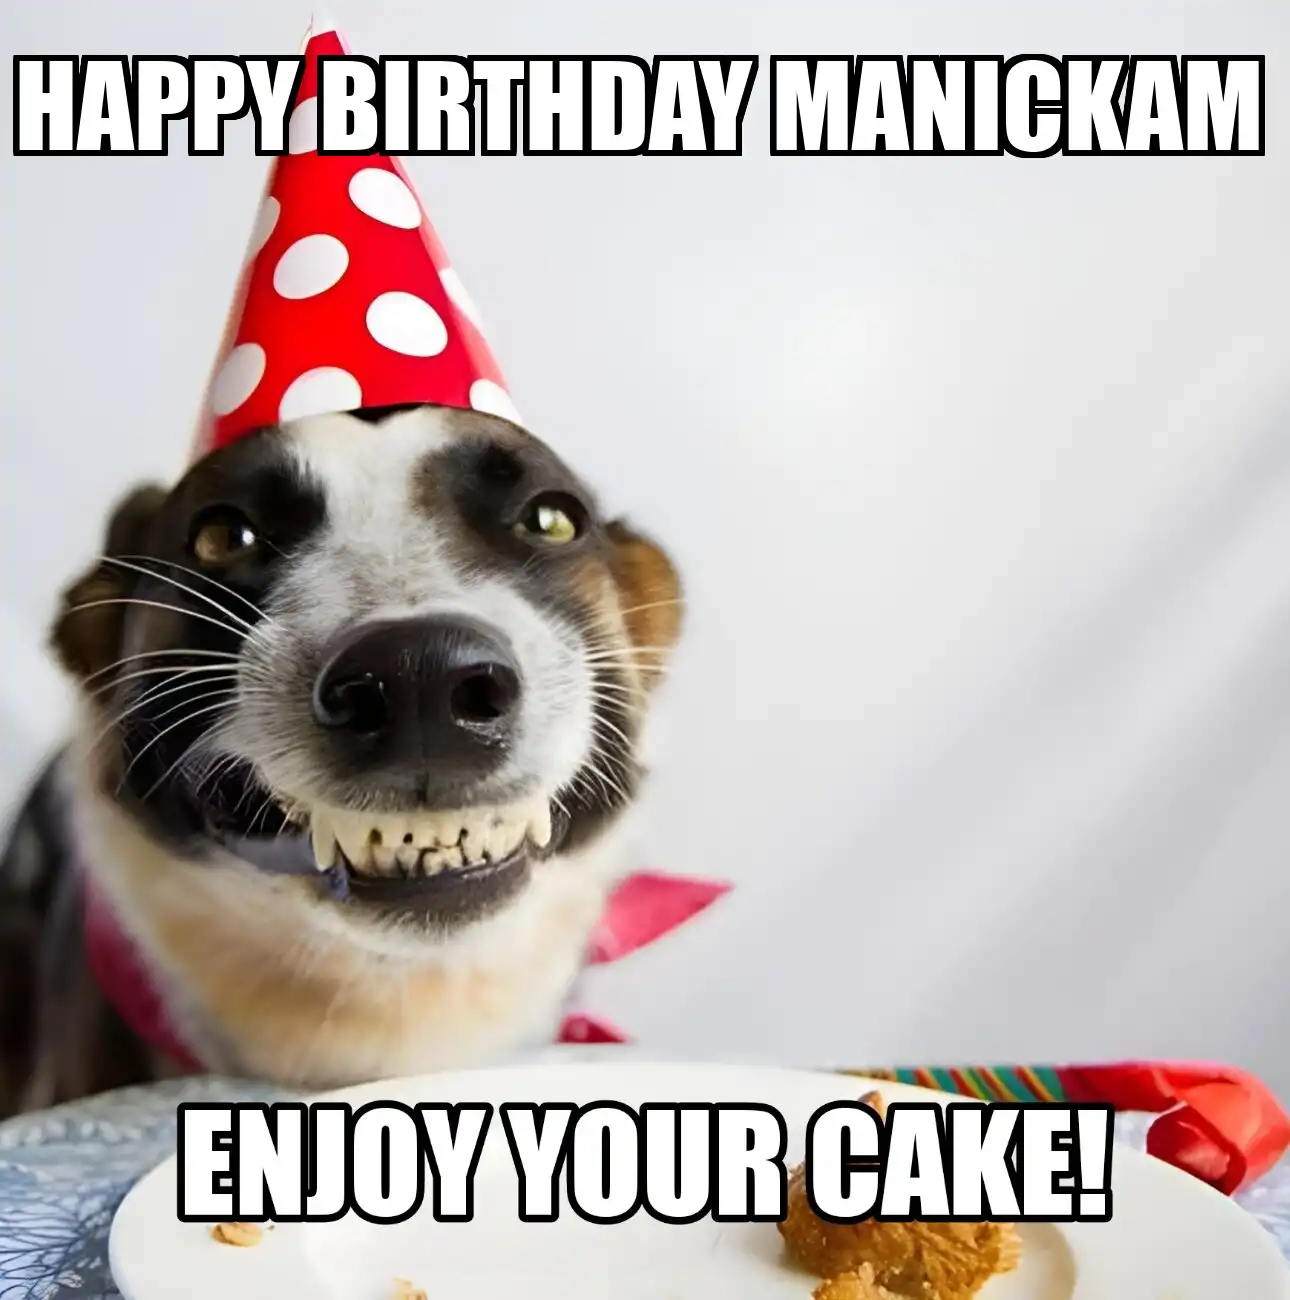 Happy Birthday Manickam Enjoy Your Cake Dog Meme